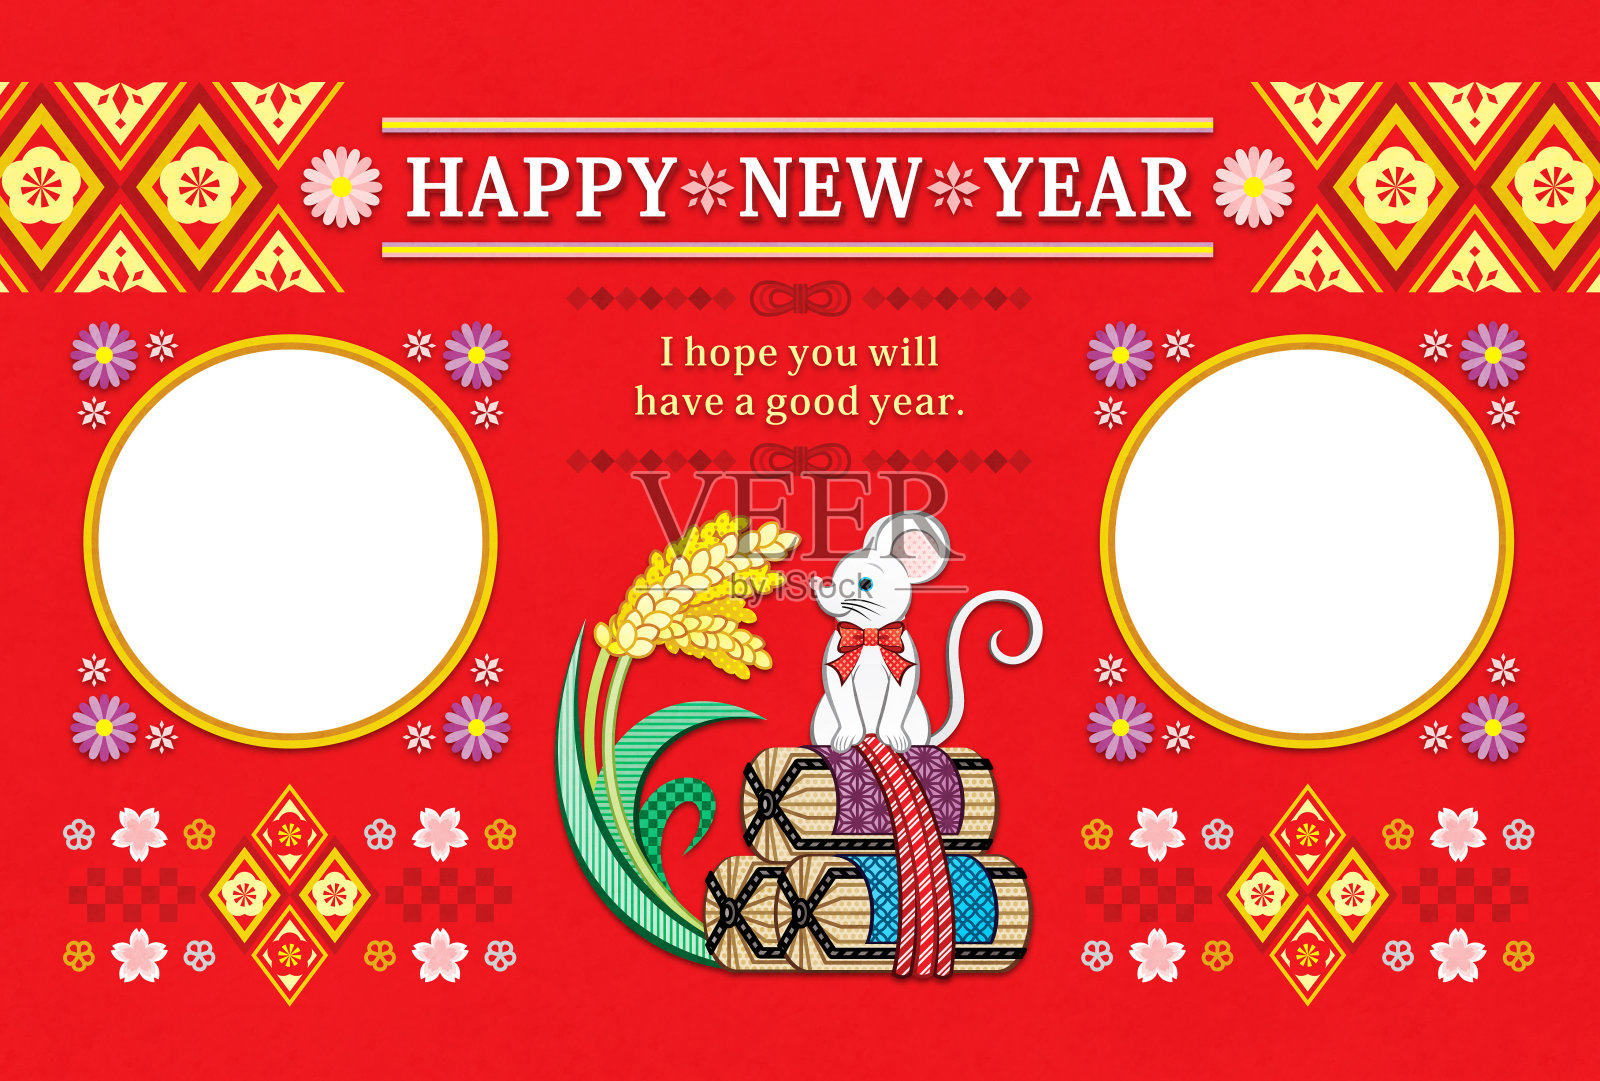 新年贺年卡的鼠标和大米袋和大米穗的插图框架贺卡设计设计模板素材